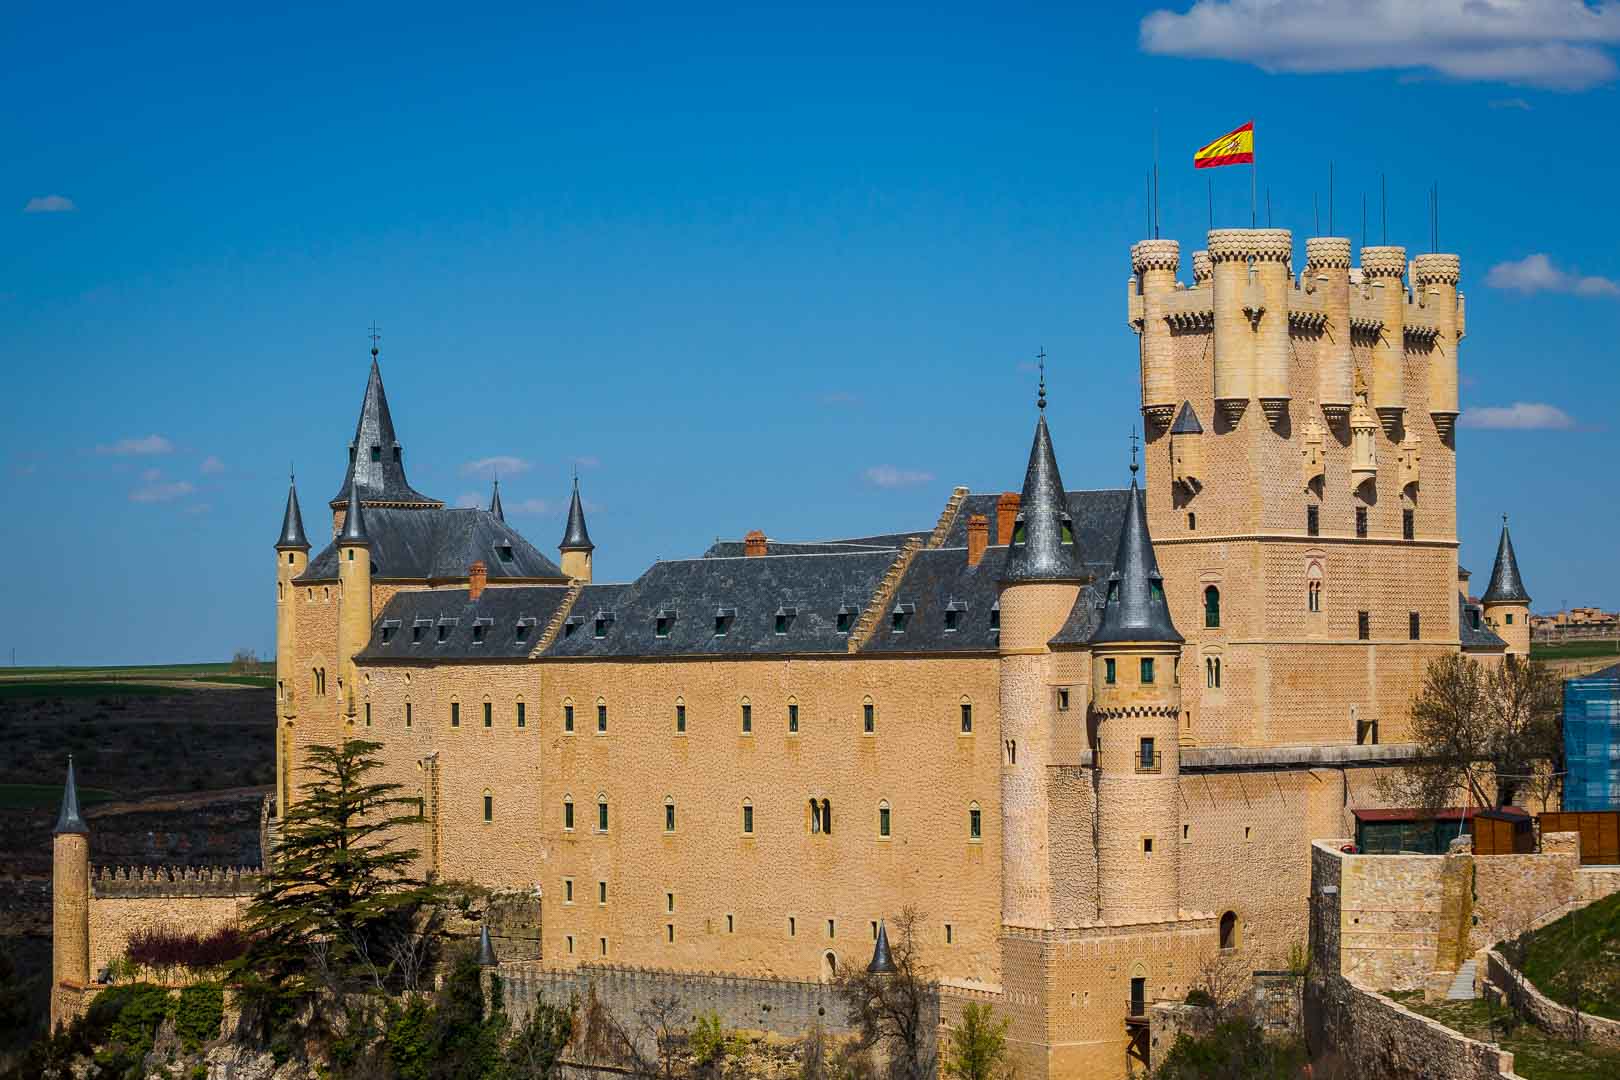 Gợi ý cho bạn Lâu đài Segovia